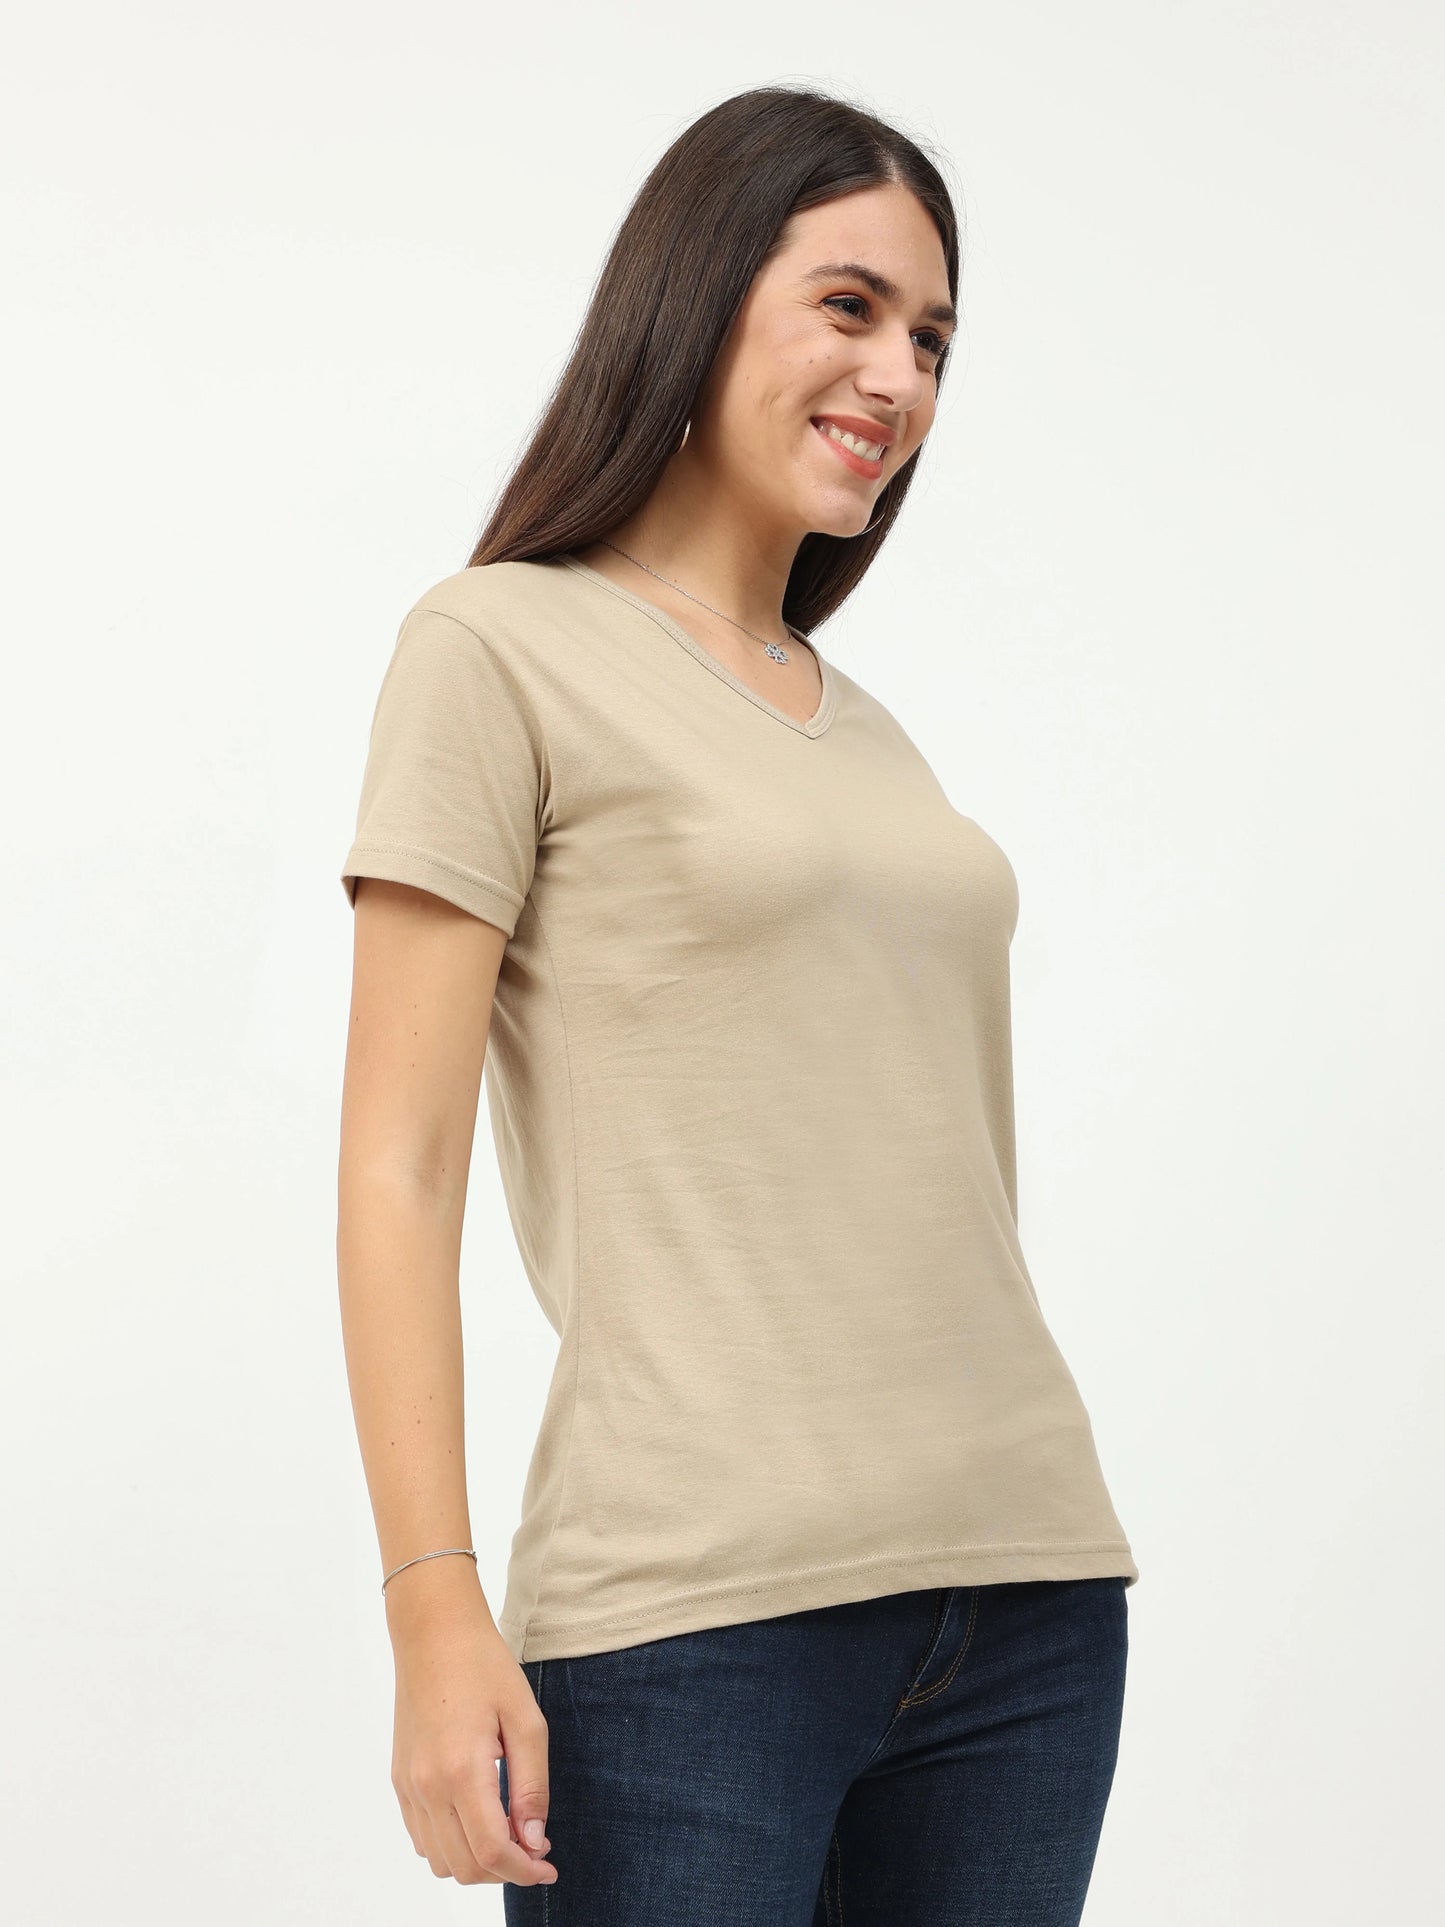 Women's Cotton Plain V Neck Half Sleeve Biscuit Color T-Shirt